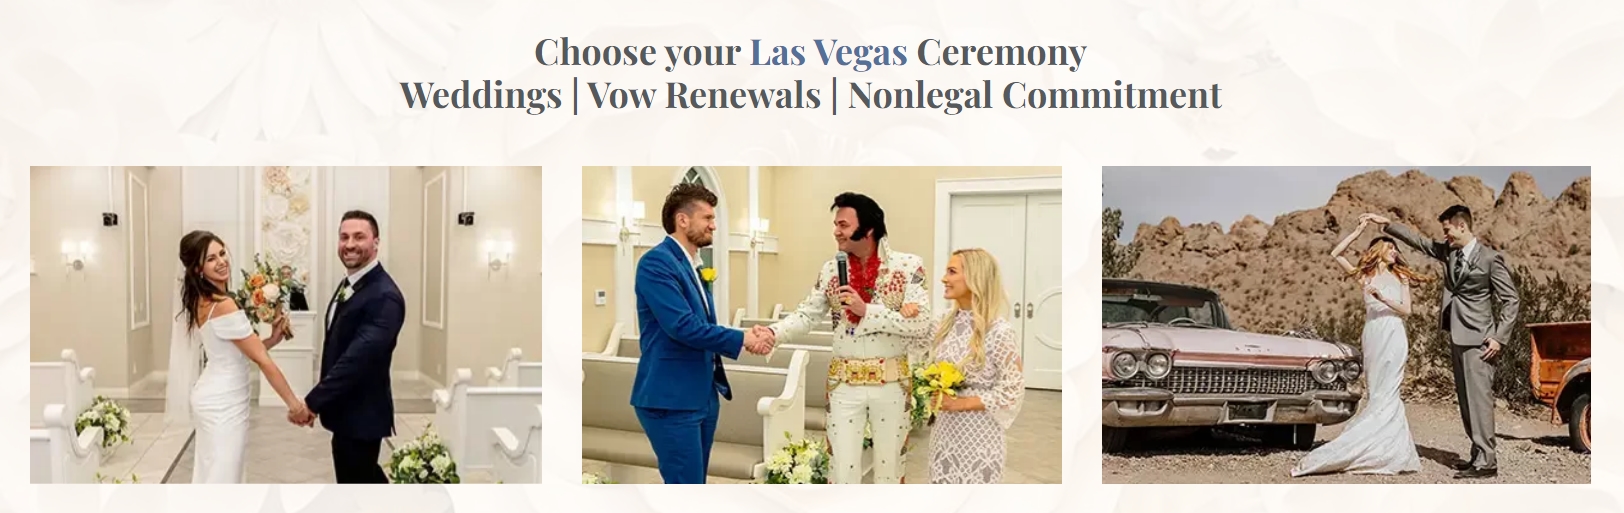 Elvis Weddings Las Vegas Cover Image